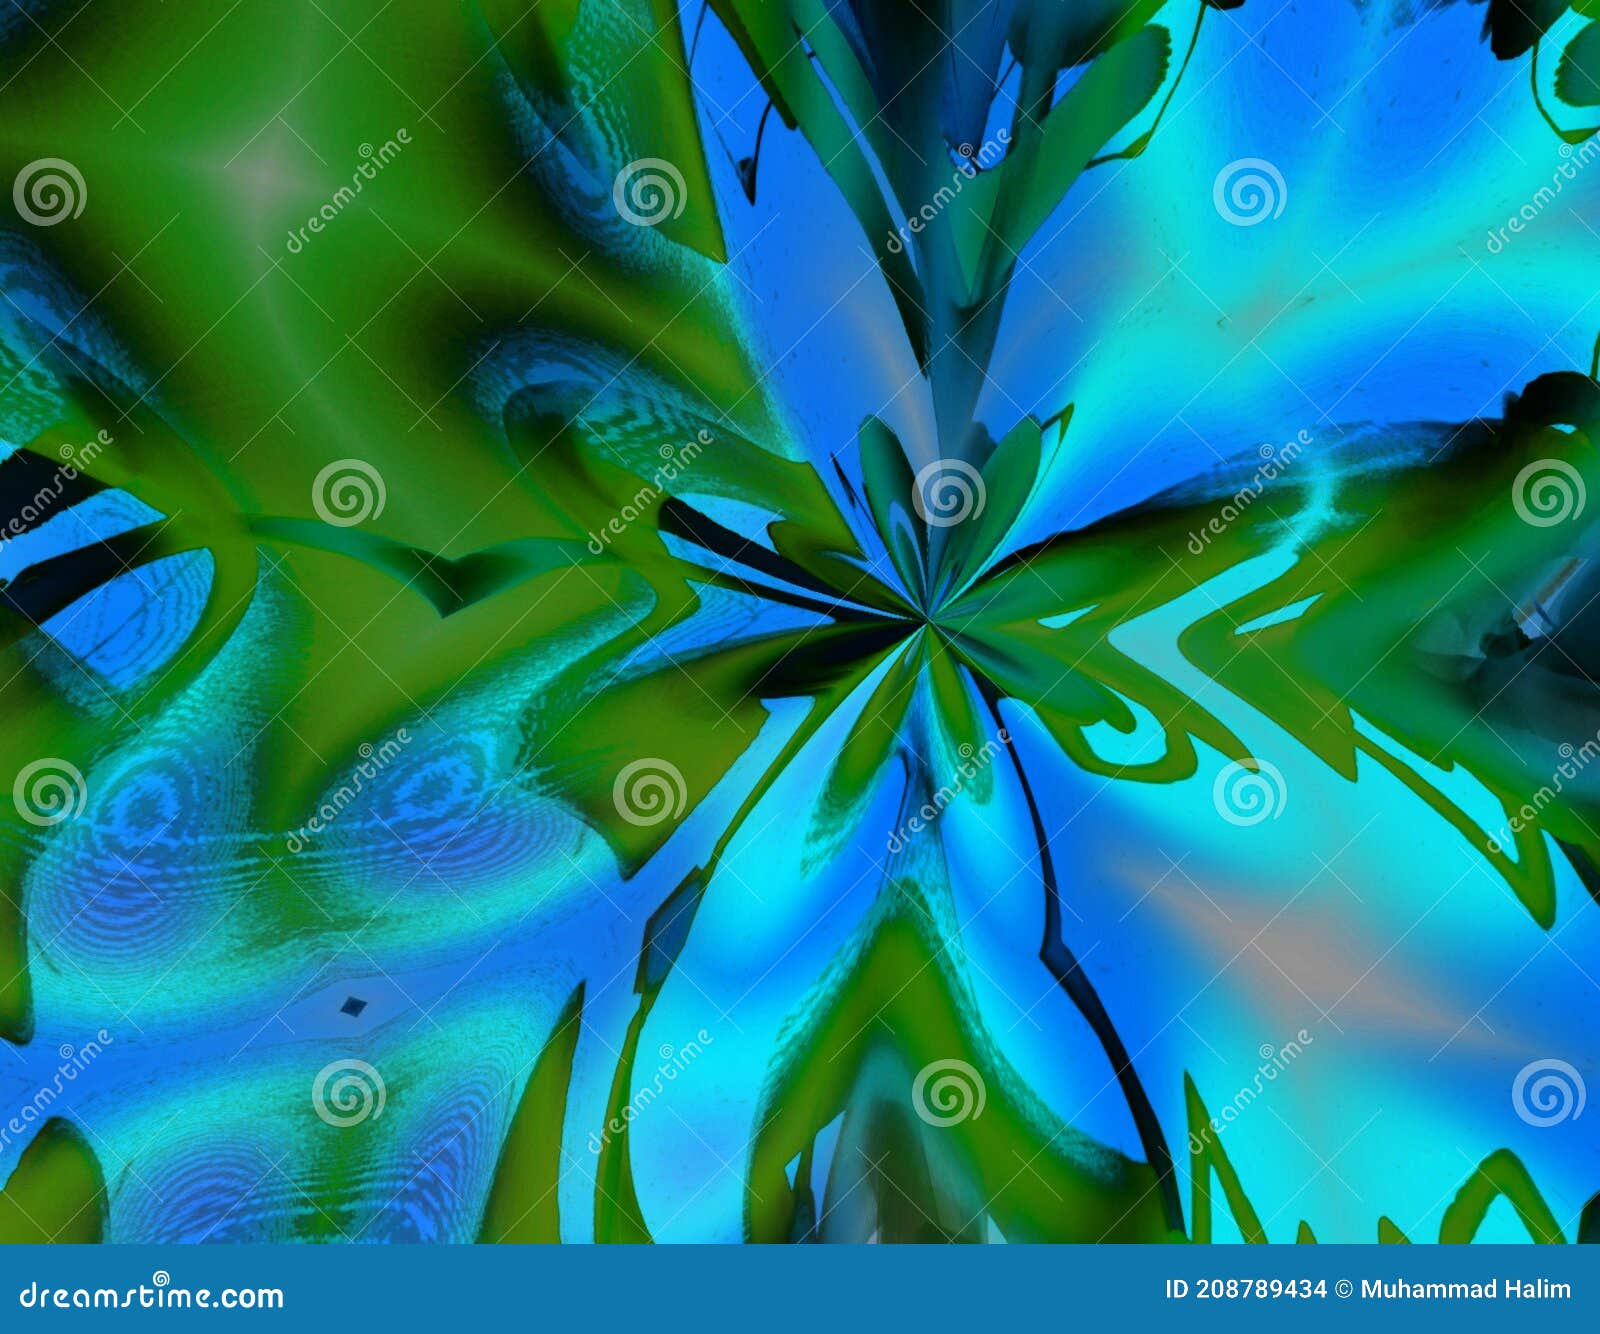 Cây dáng bóng xanh rợp trời như một viên ngọc thật lung linh. Những loại cây shade không chỉ giúp cho không gian của bạn thêm xanh mà còn mang đến không khí trong lành và thu hút cảm xúc tích cực. Hãy xem bức ảnh liên quan để cảm nhận!